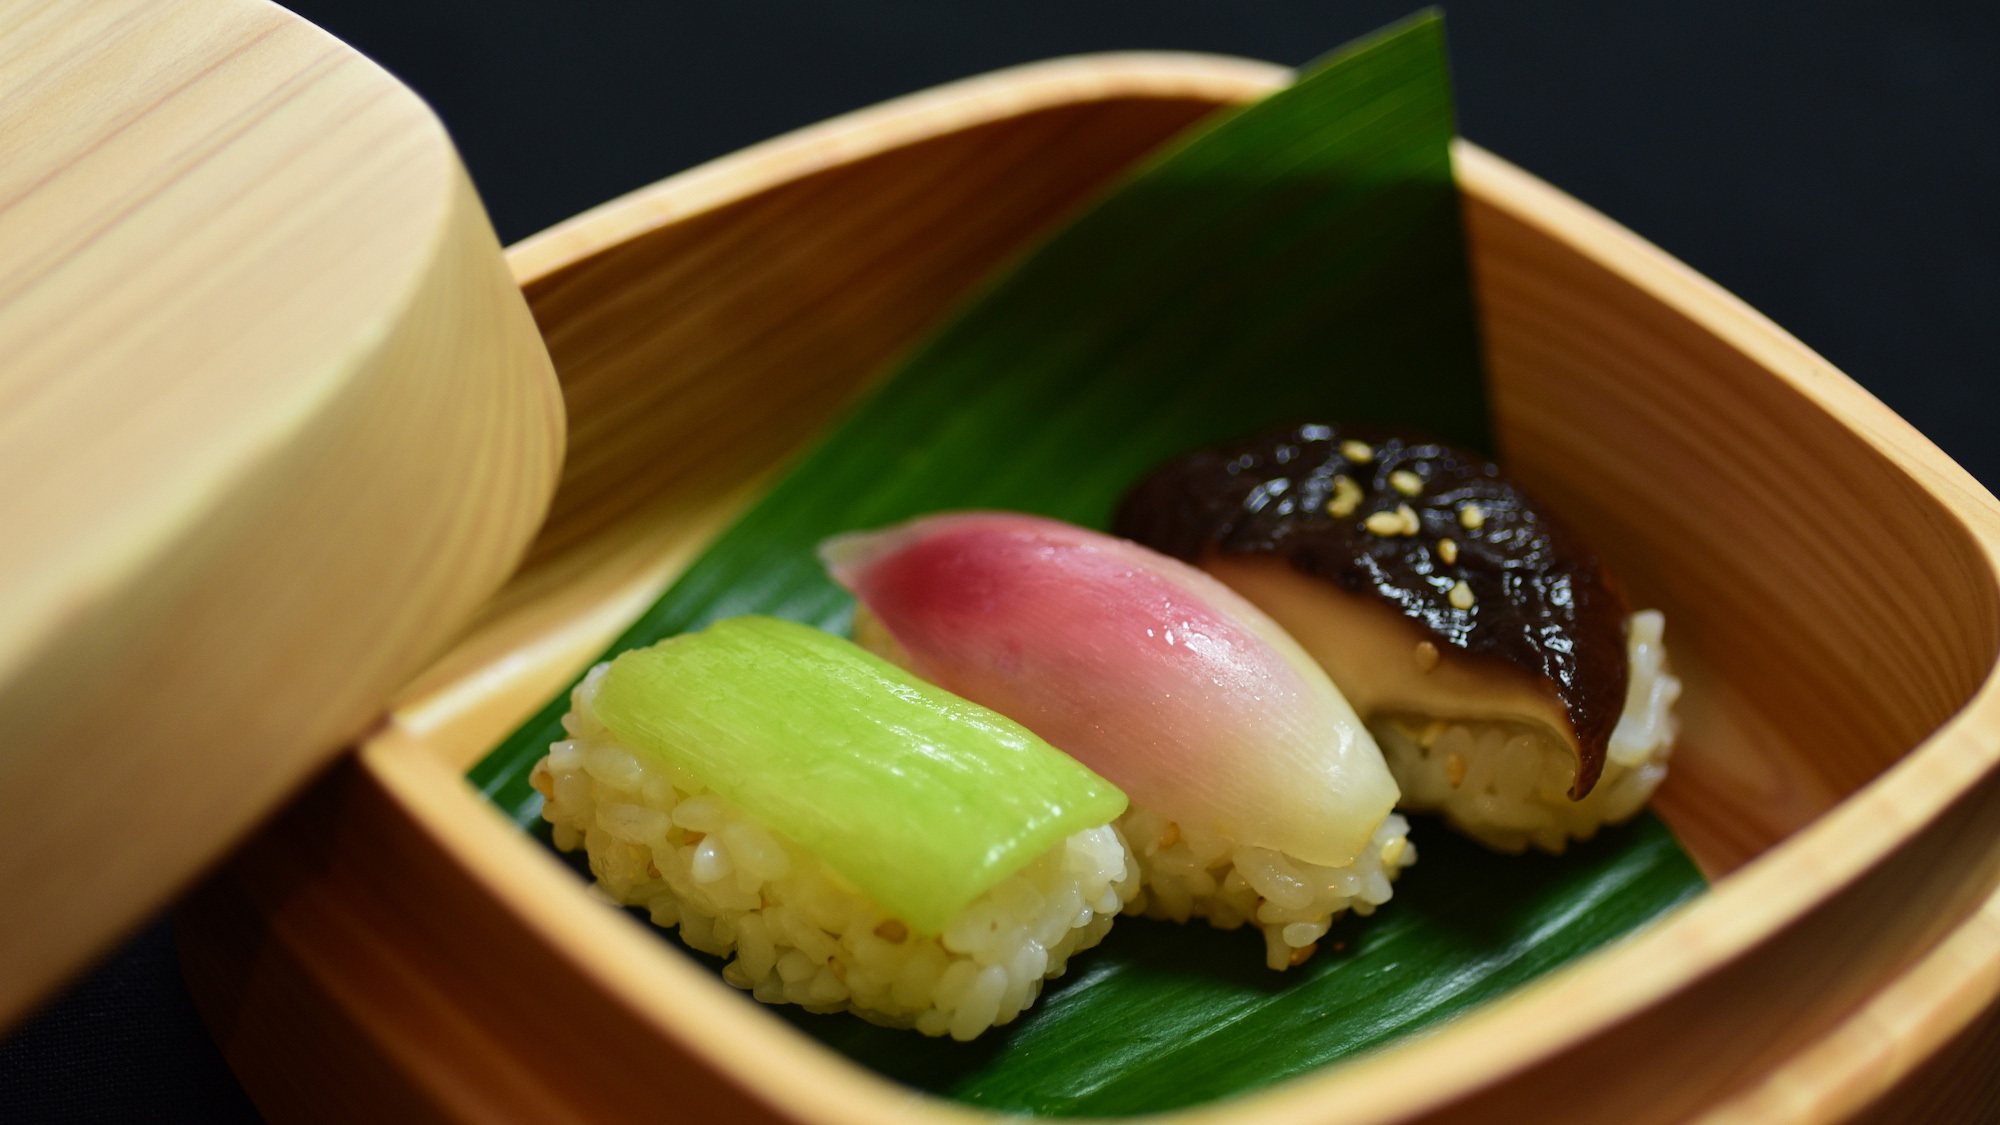 ・滋味深い自然派日本料理をお楽しみください